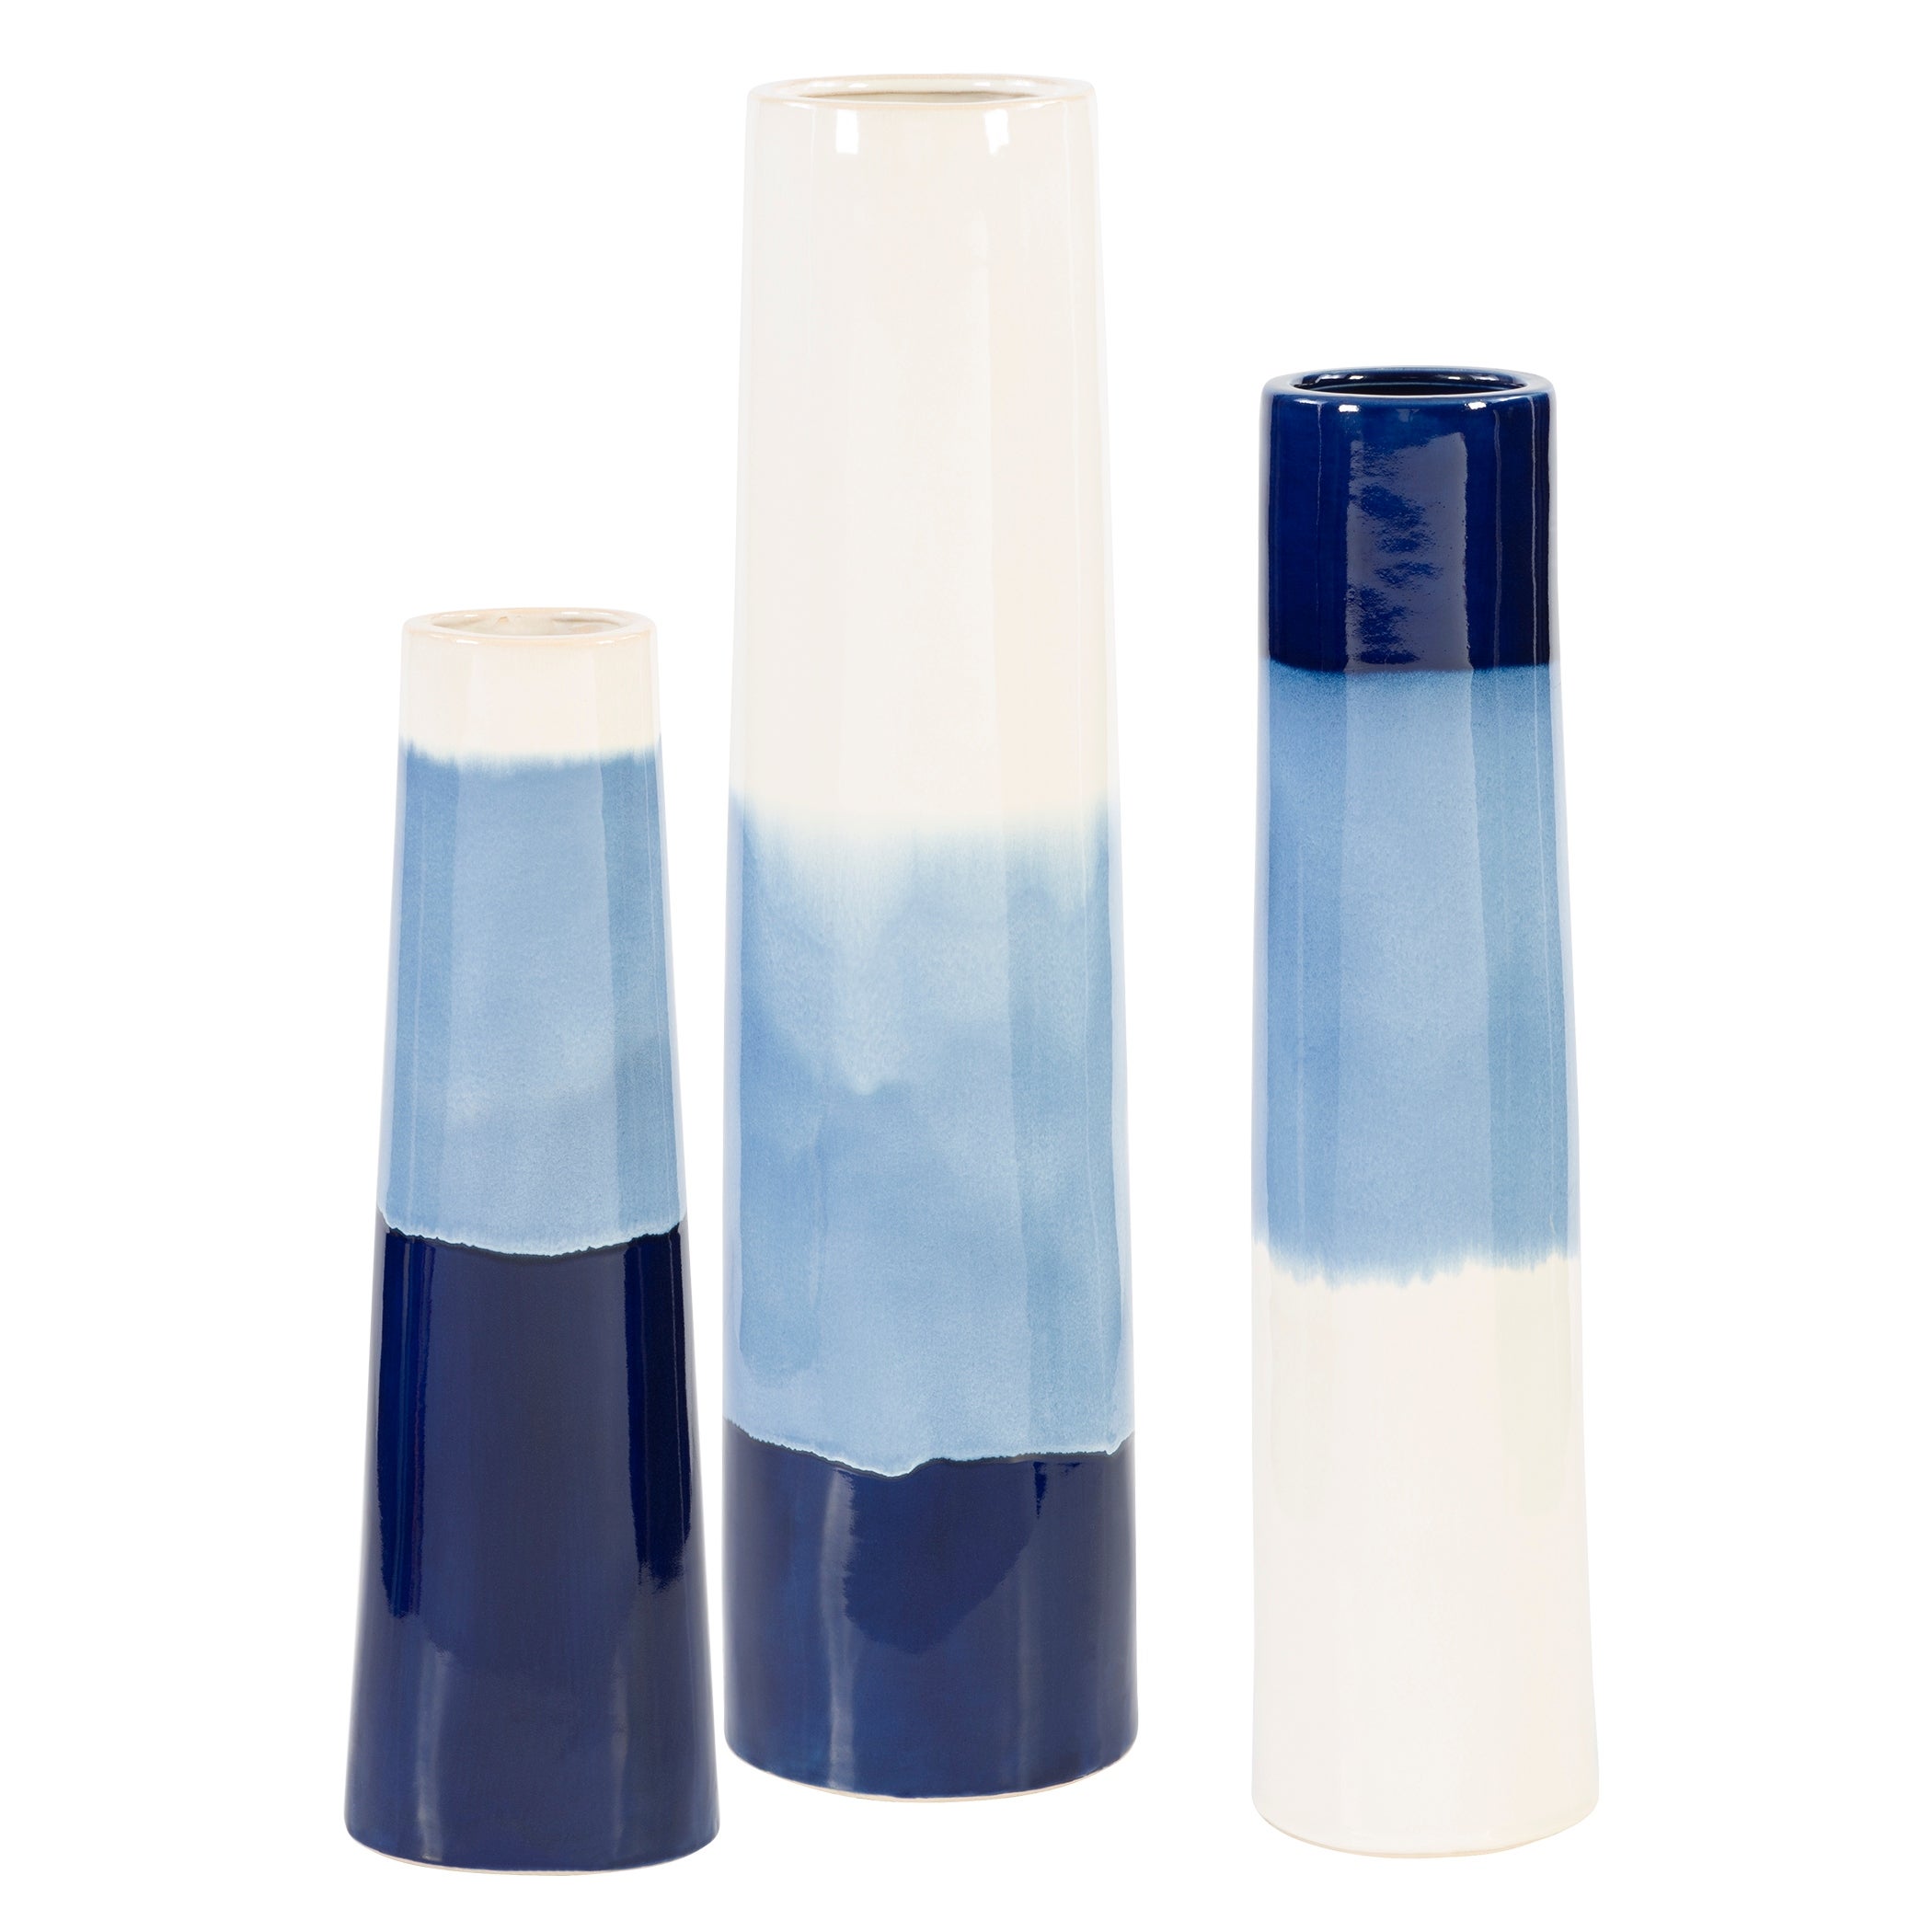 Uttermost Sconset White & Blue Vases (Set of 3)